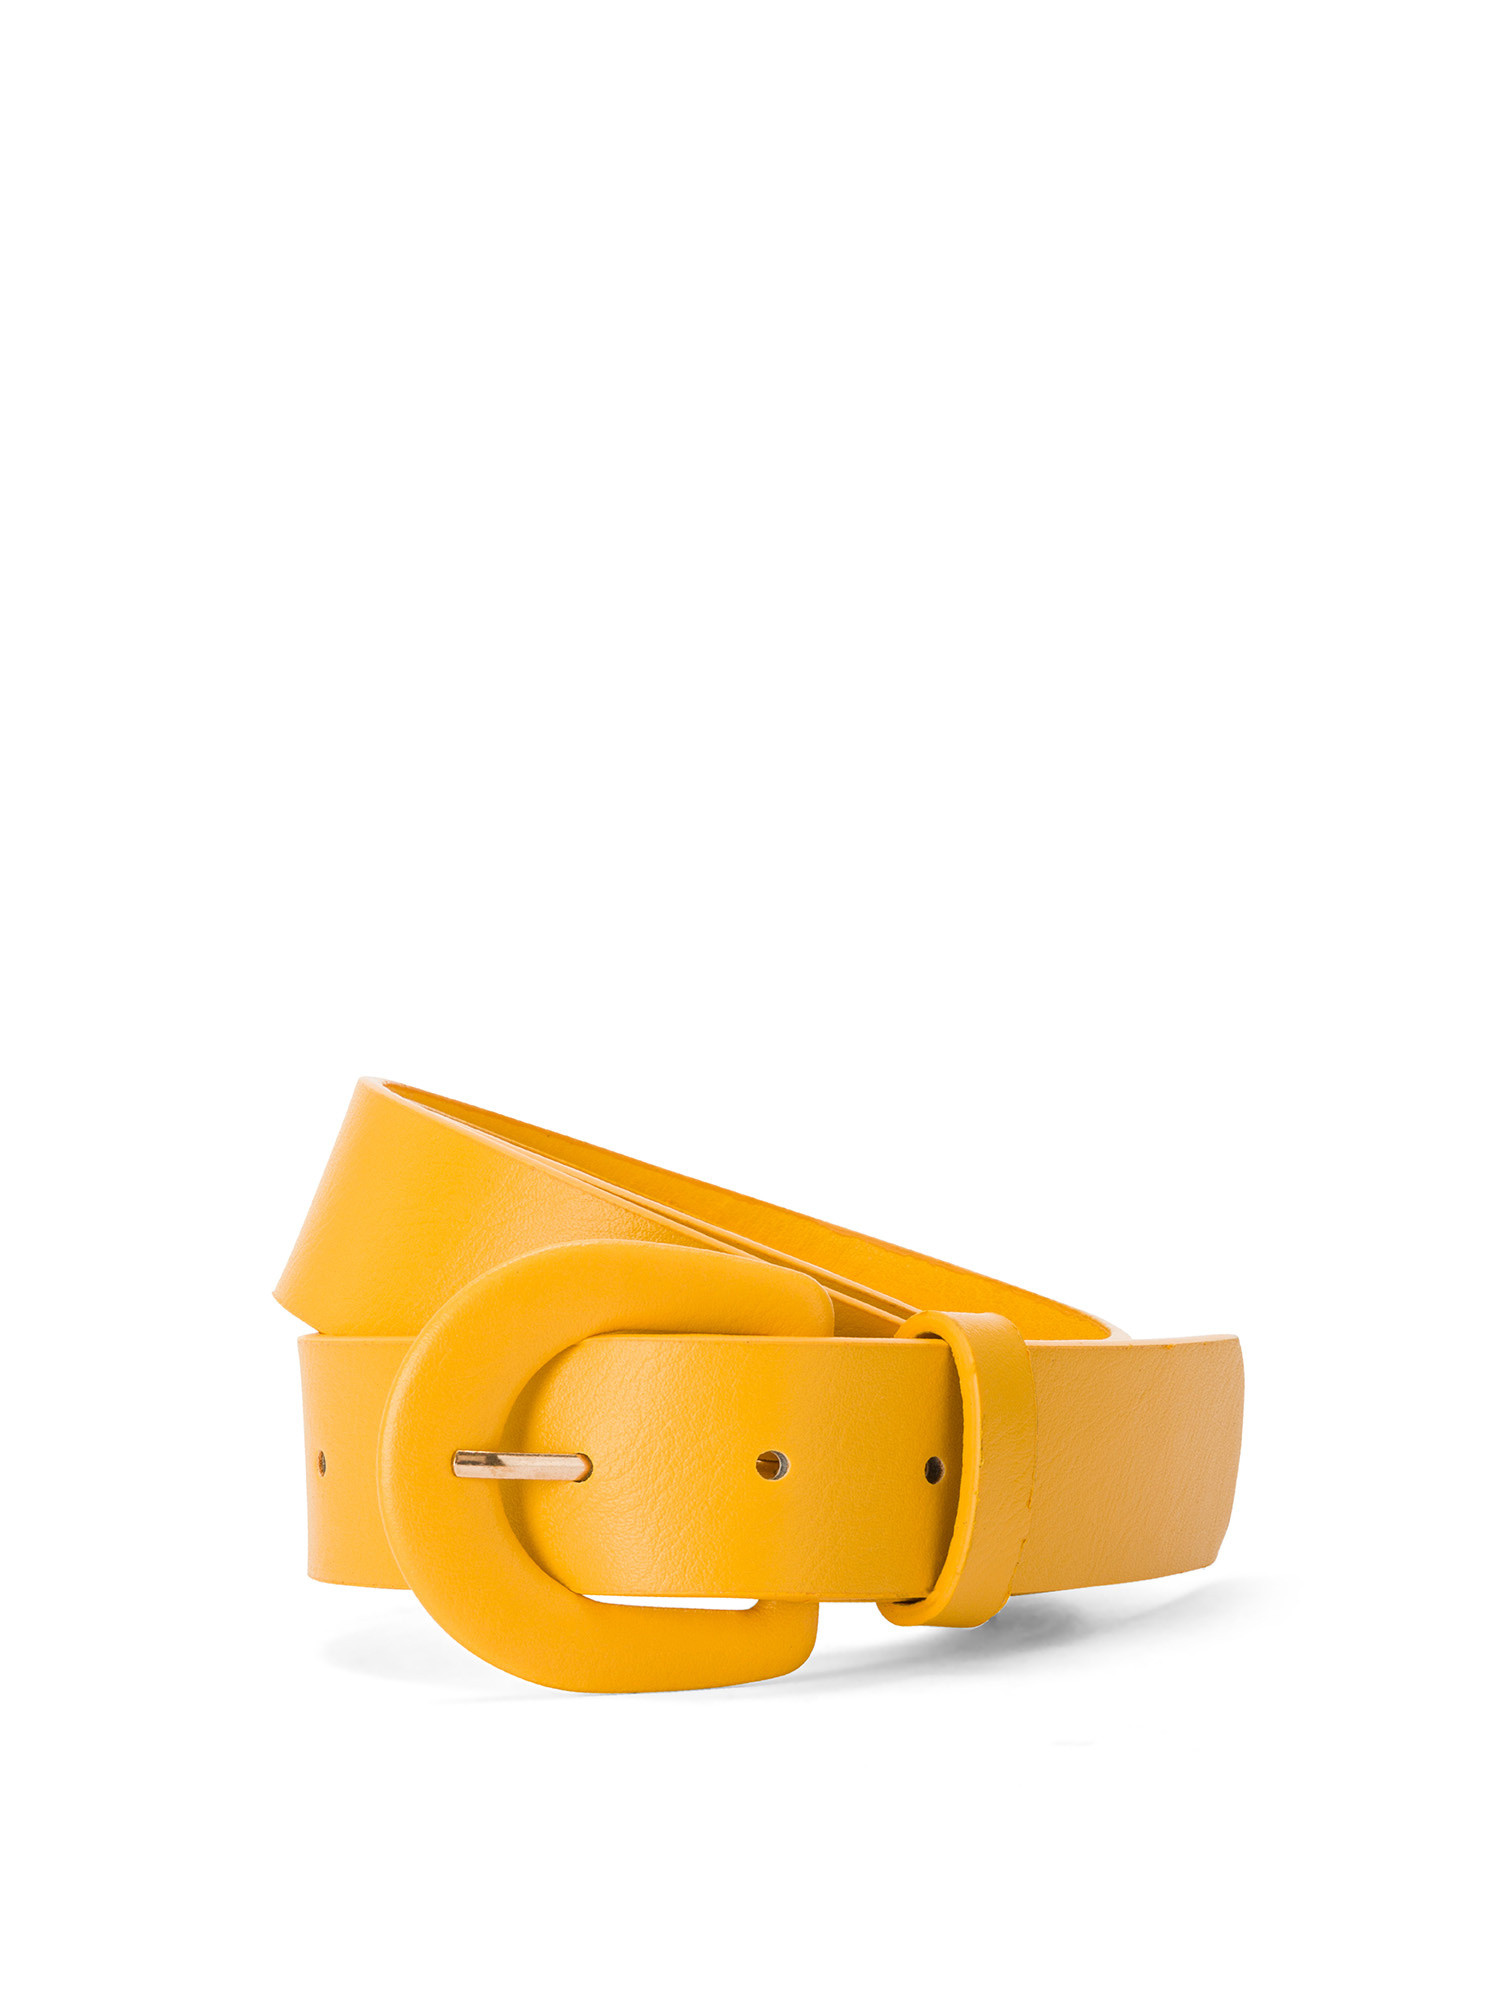 Koan - Belt, Yellow, large image number 0